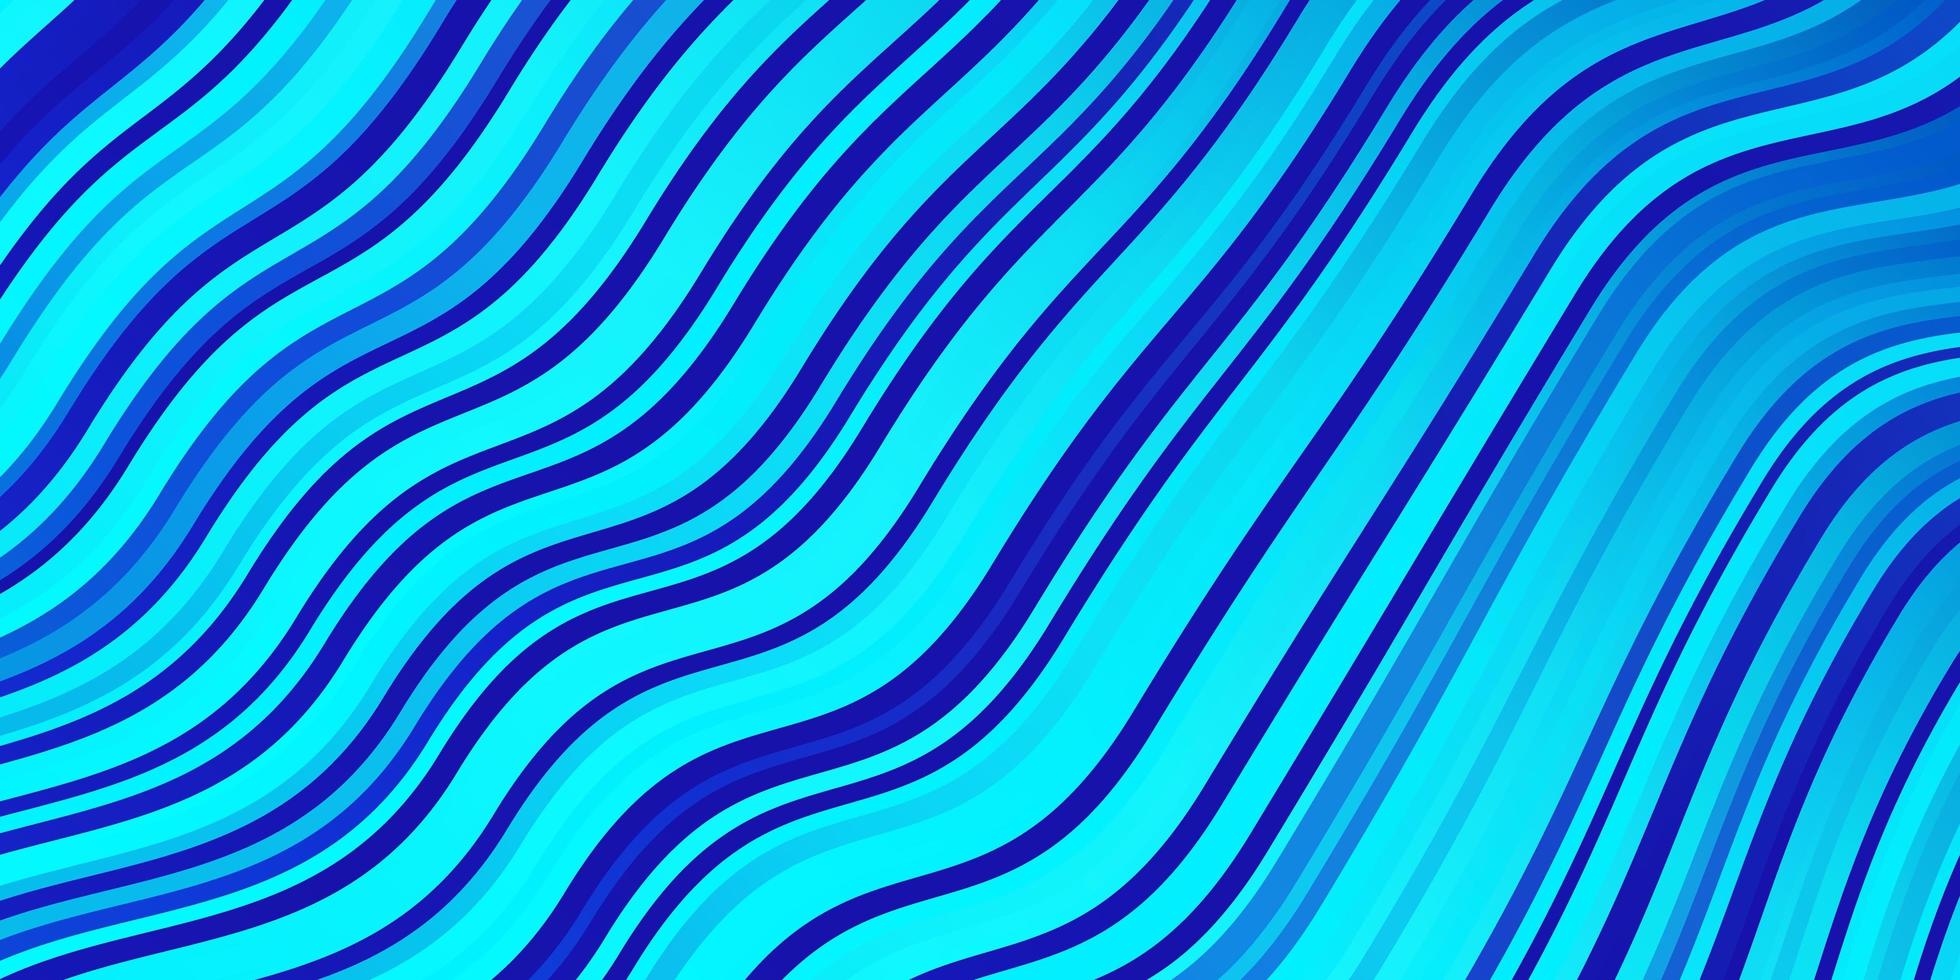 licht roze blauwe vector achtergrond met gebogen lijnen kleurrijke illustratie met gebogen lijnen sjabloon voor mobiele telefoons